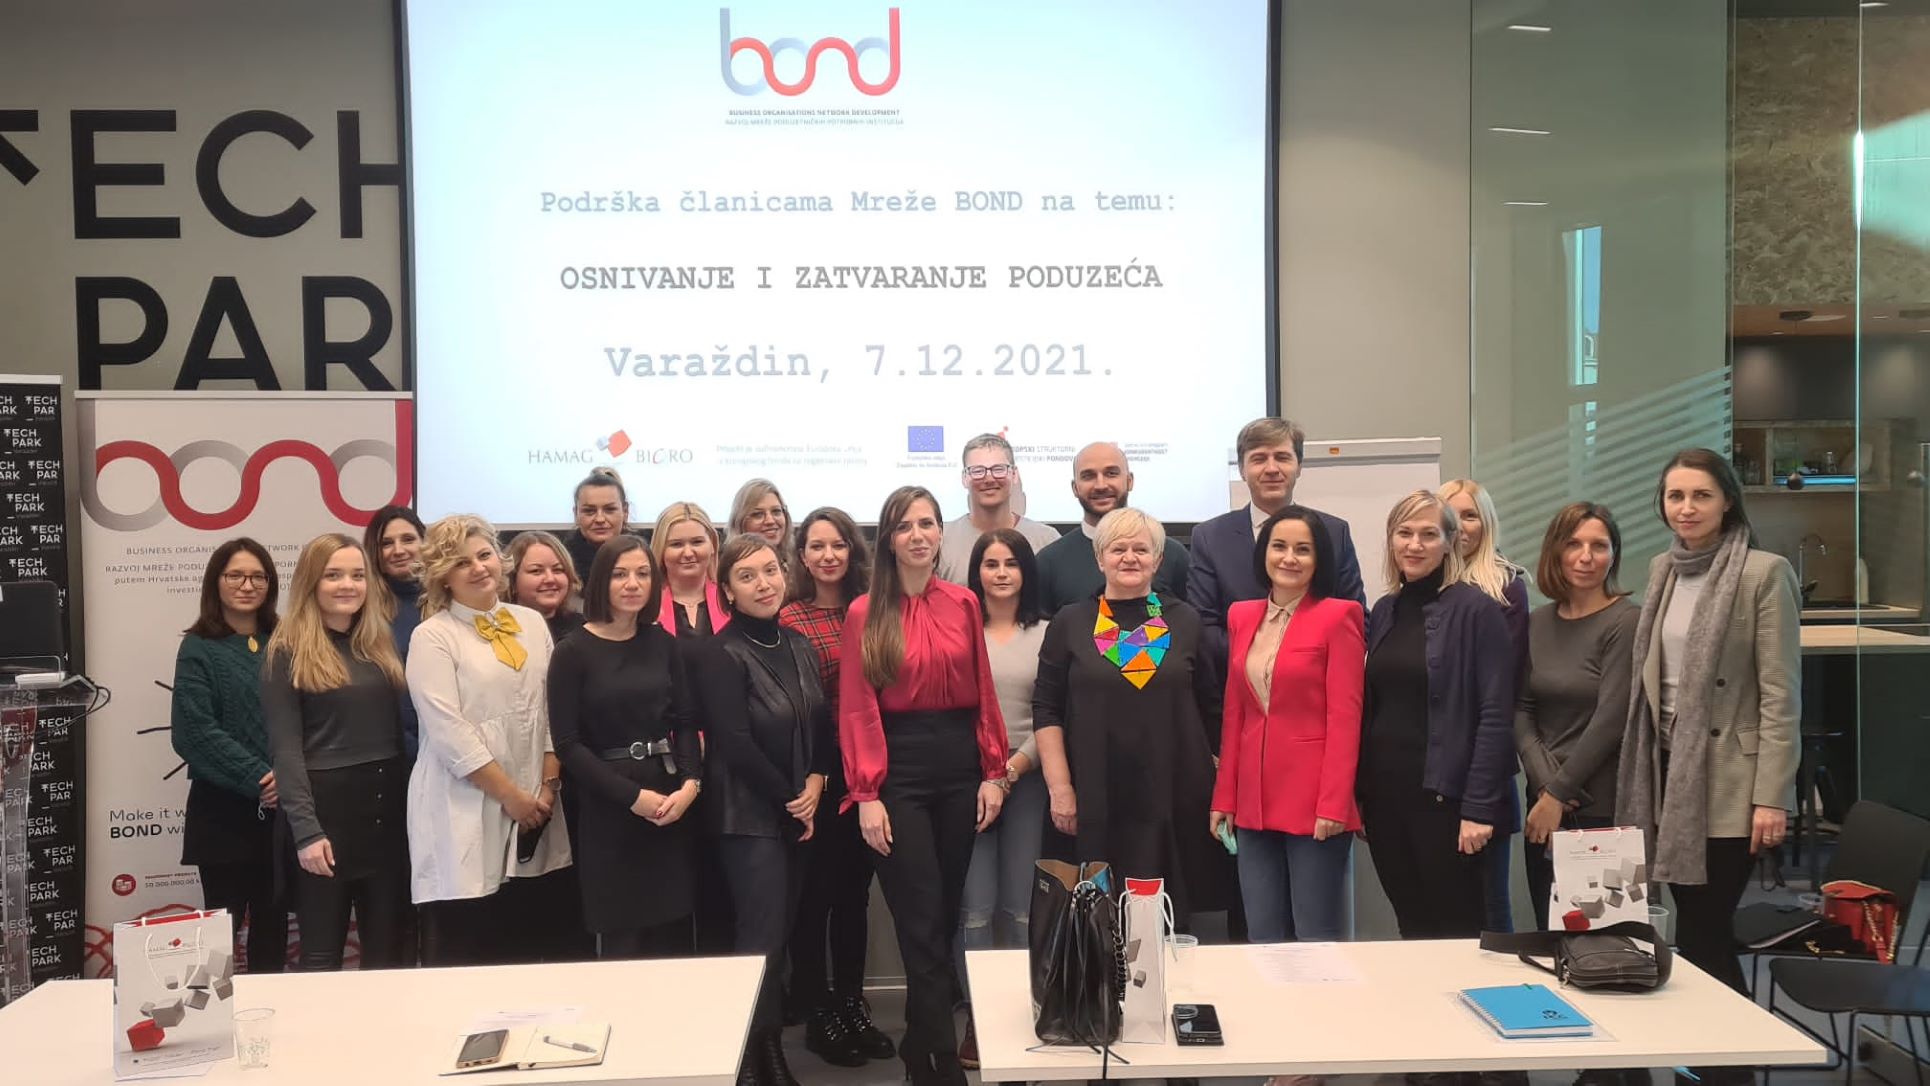 BOND 2 u Varaždinu: Razvojem dodatnih vještina do novih poslovnih ideja